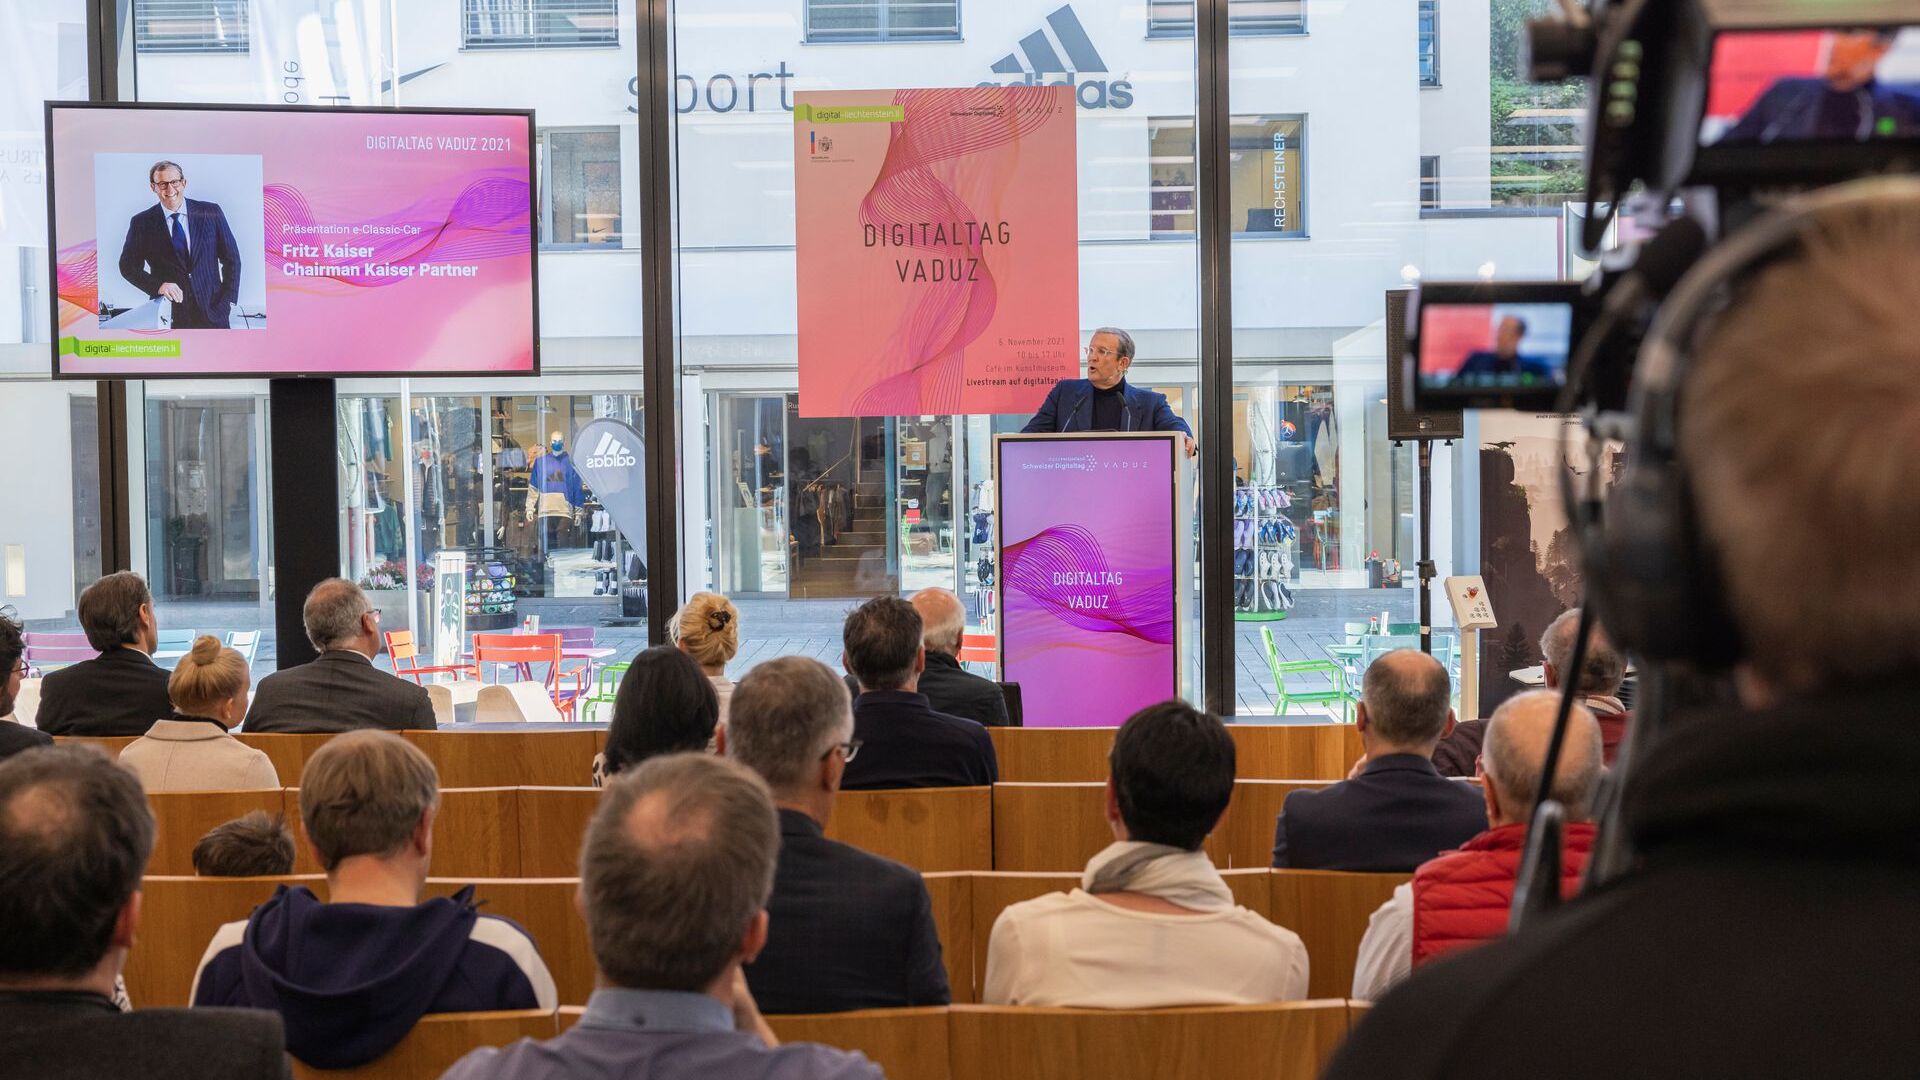 Художественный музей столицы Княжества Лихтенштейн в субботу, 6 ноября 2021 г., приветствовал «Digitaltag Vaduz»: выступление Фрица Кайзера, председателя и владельца Kaiser Partner